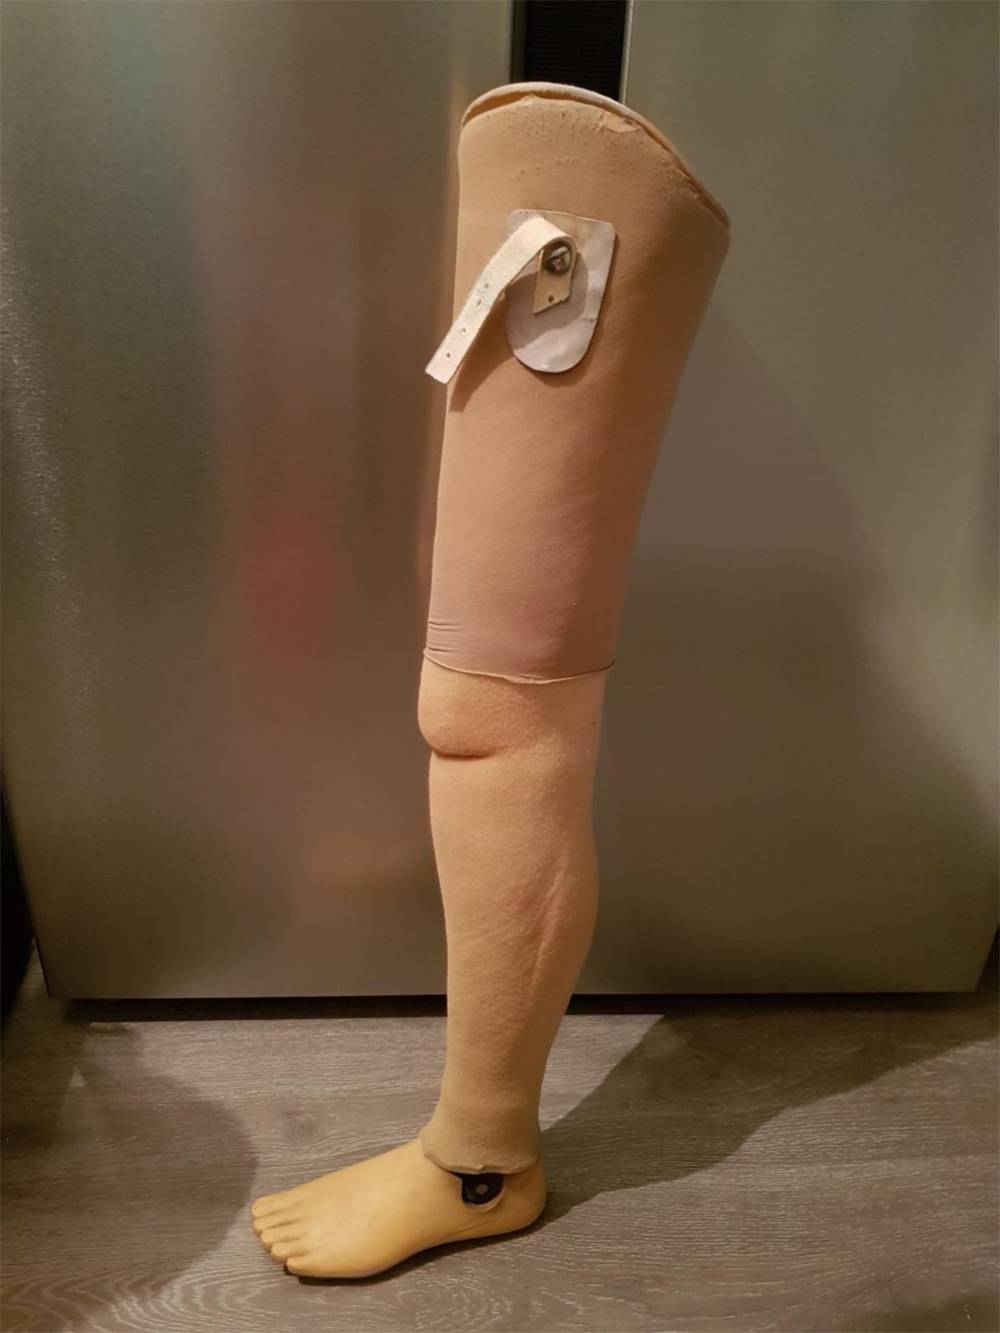 Так выглядит протез ноги с косметическим решением из поролона